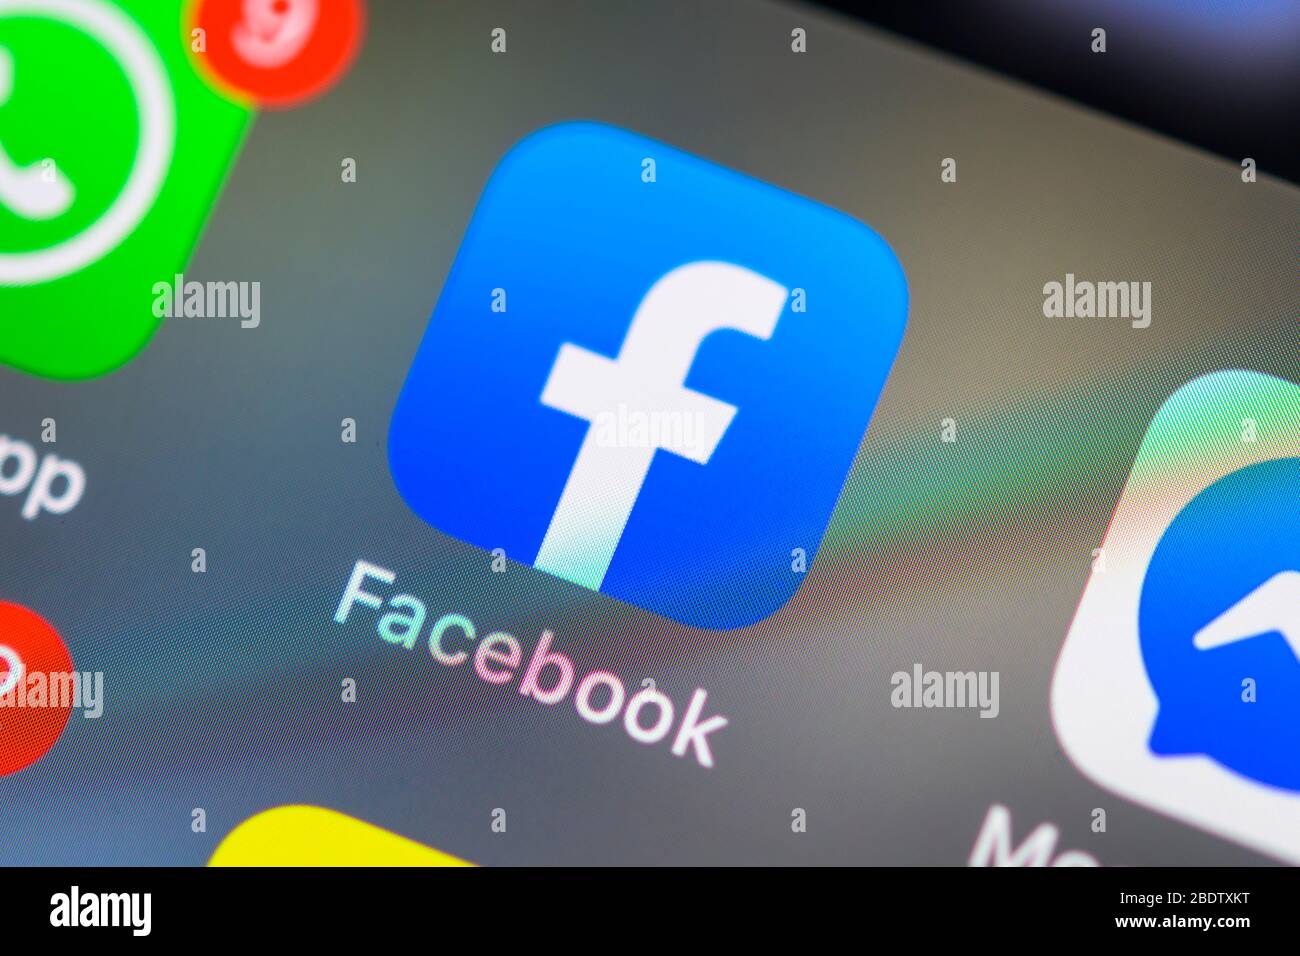 Facebook-Anwendung, soziales Netzwerk, App-Symbol, Anzeige auf dem Display von Handy, Smartphone, Detail, Vollformat Stockfoto